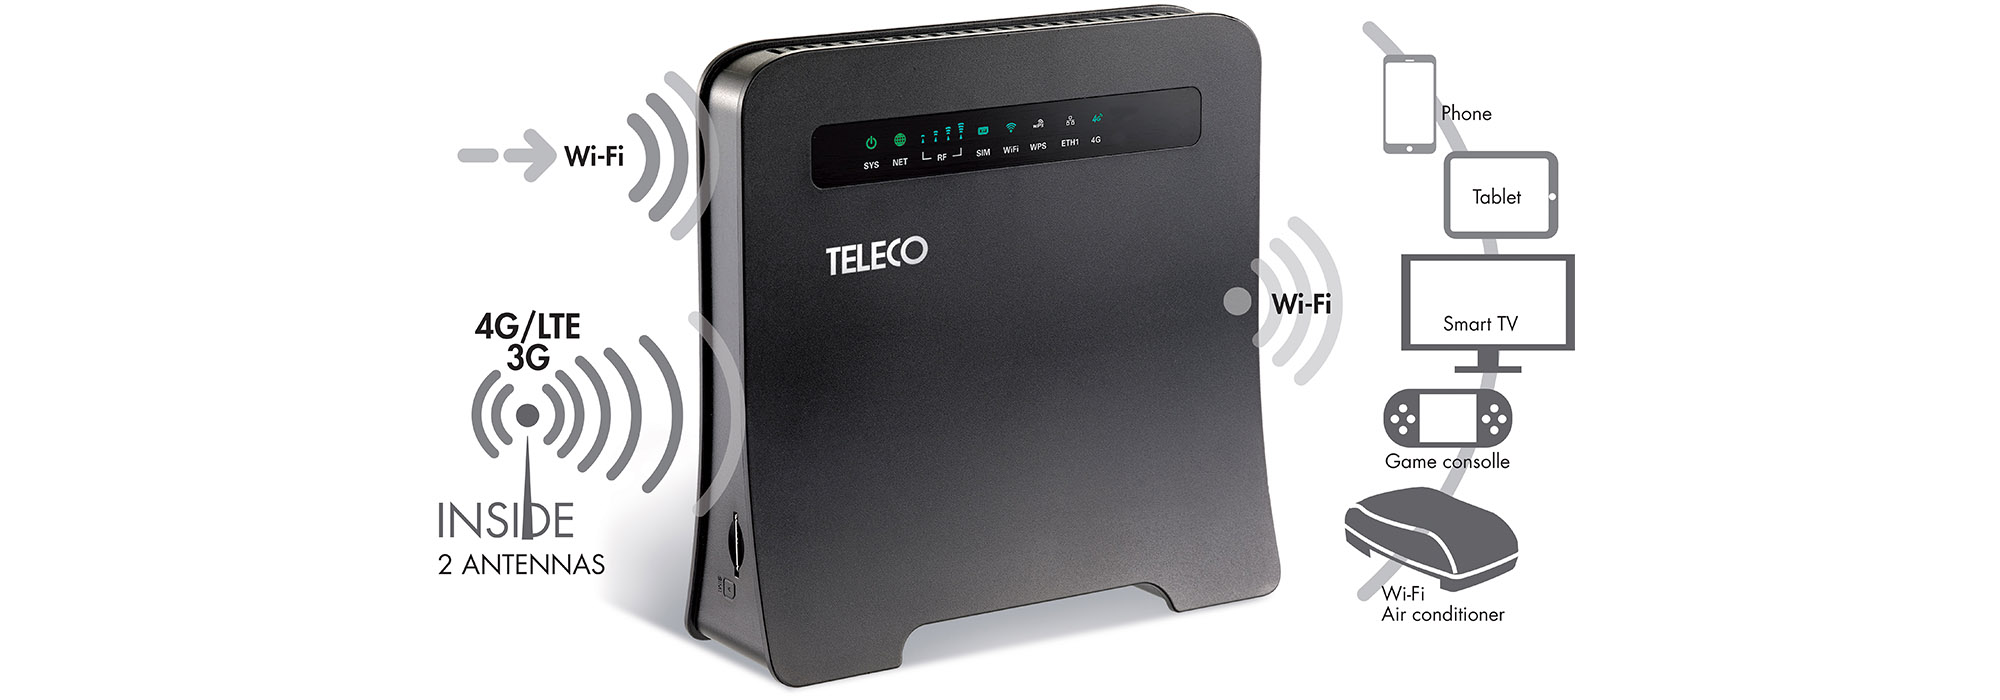 Teleco präsentiert mobilen Kombi-Router mit LTE und WLAN